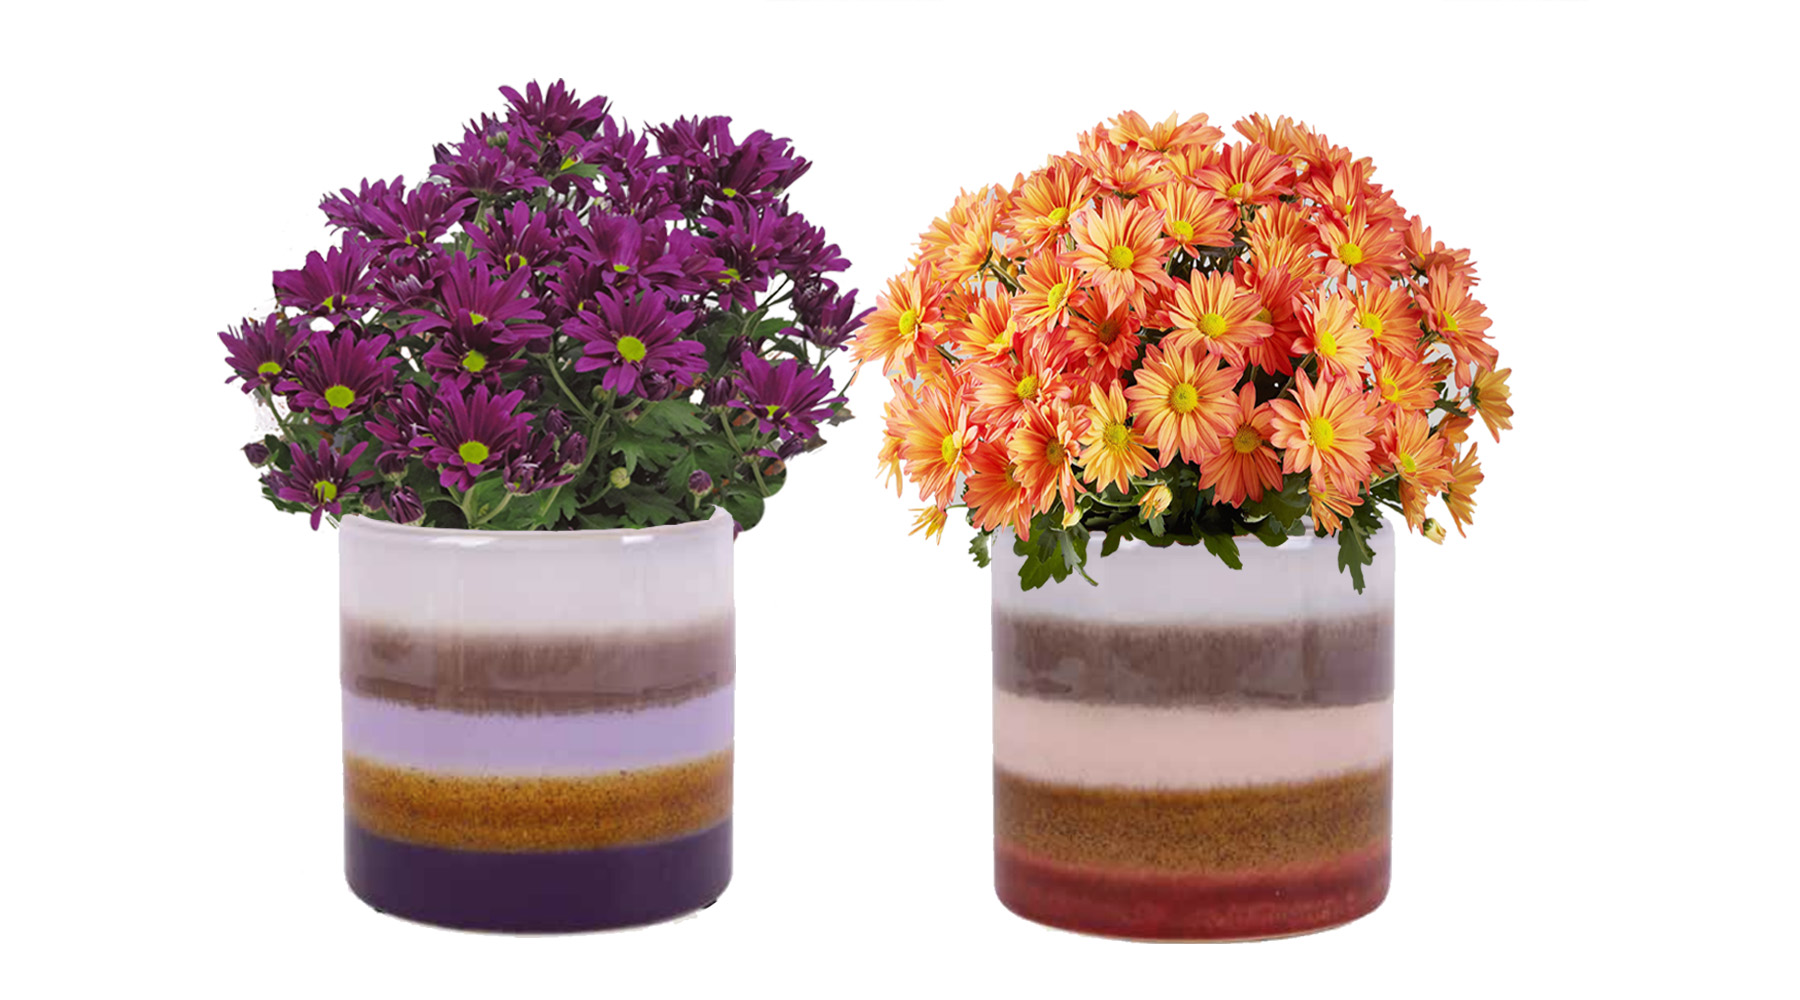 florist mum in striped aida ceramic container purple and orange flowers